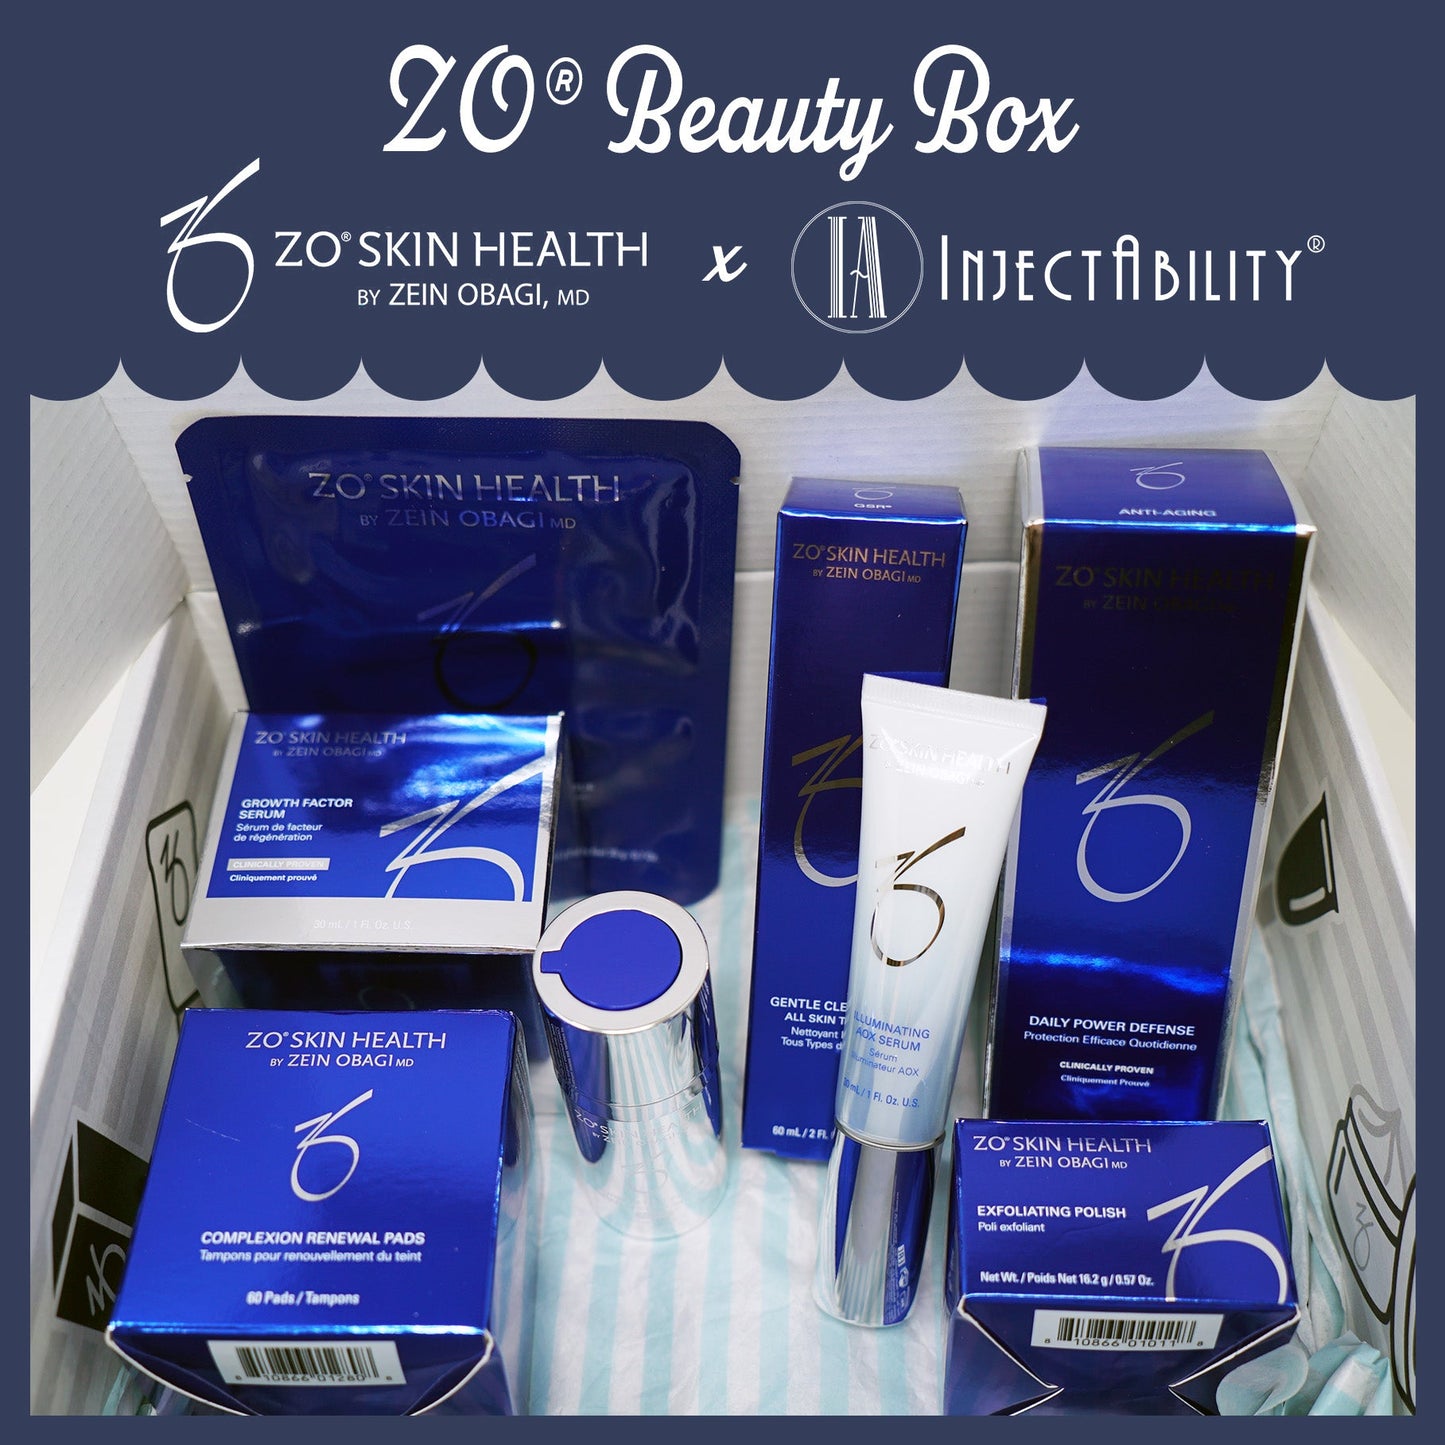 ZO® Beauty Box